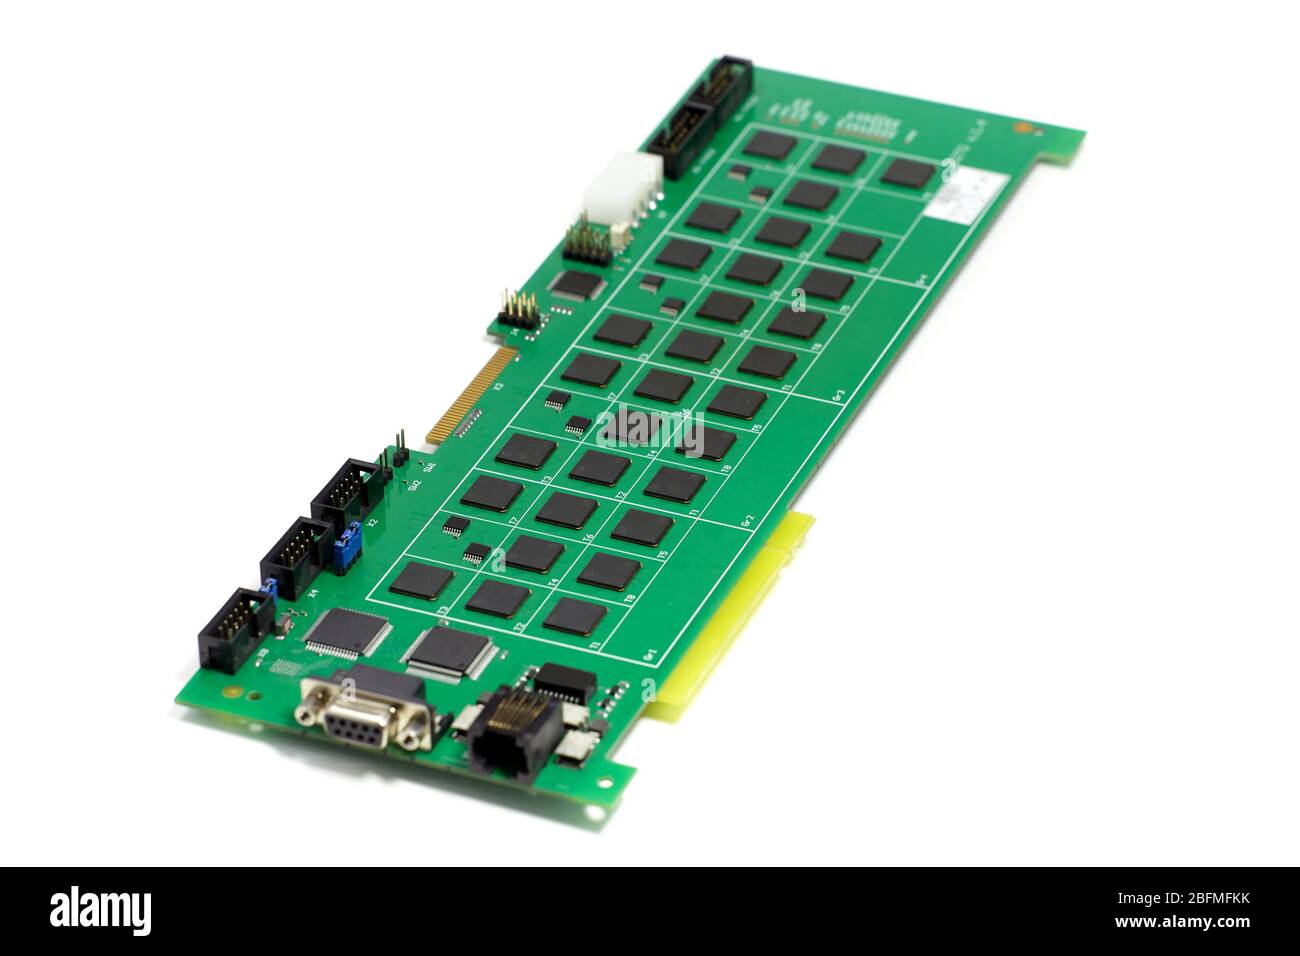 Scheda elettronica a circuito stampato con chip e altri componenti, colore verde, lato anteriore, vista angolata, isolata su sfondo bianco Foto Stock